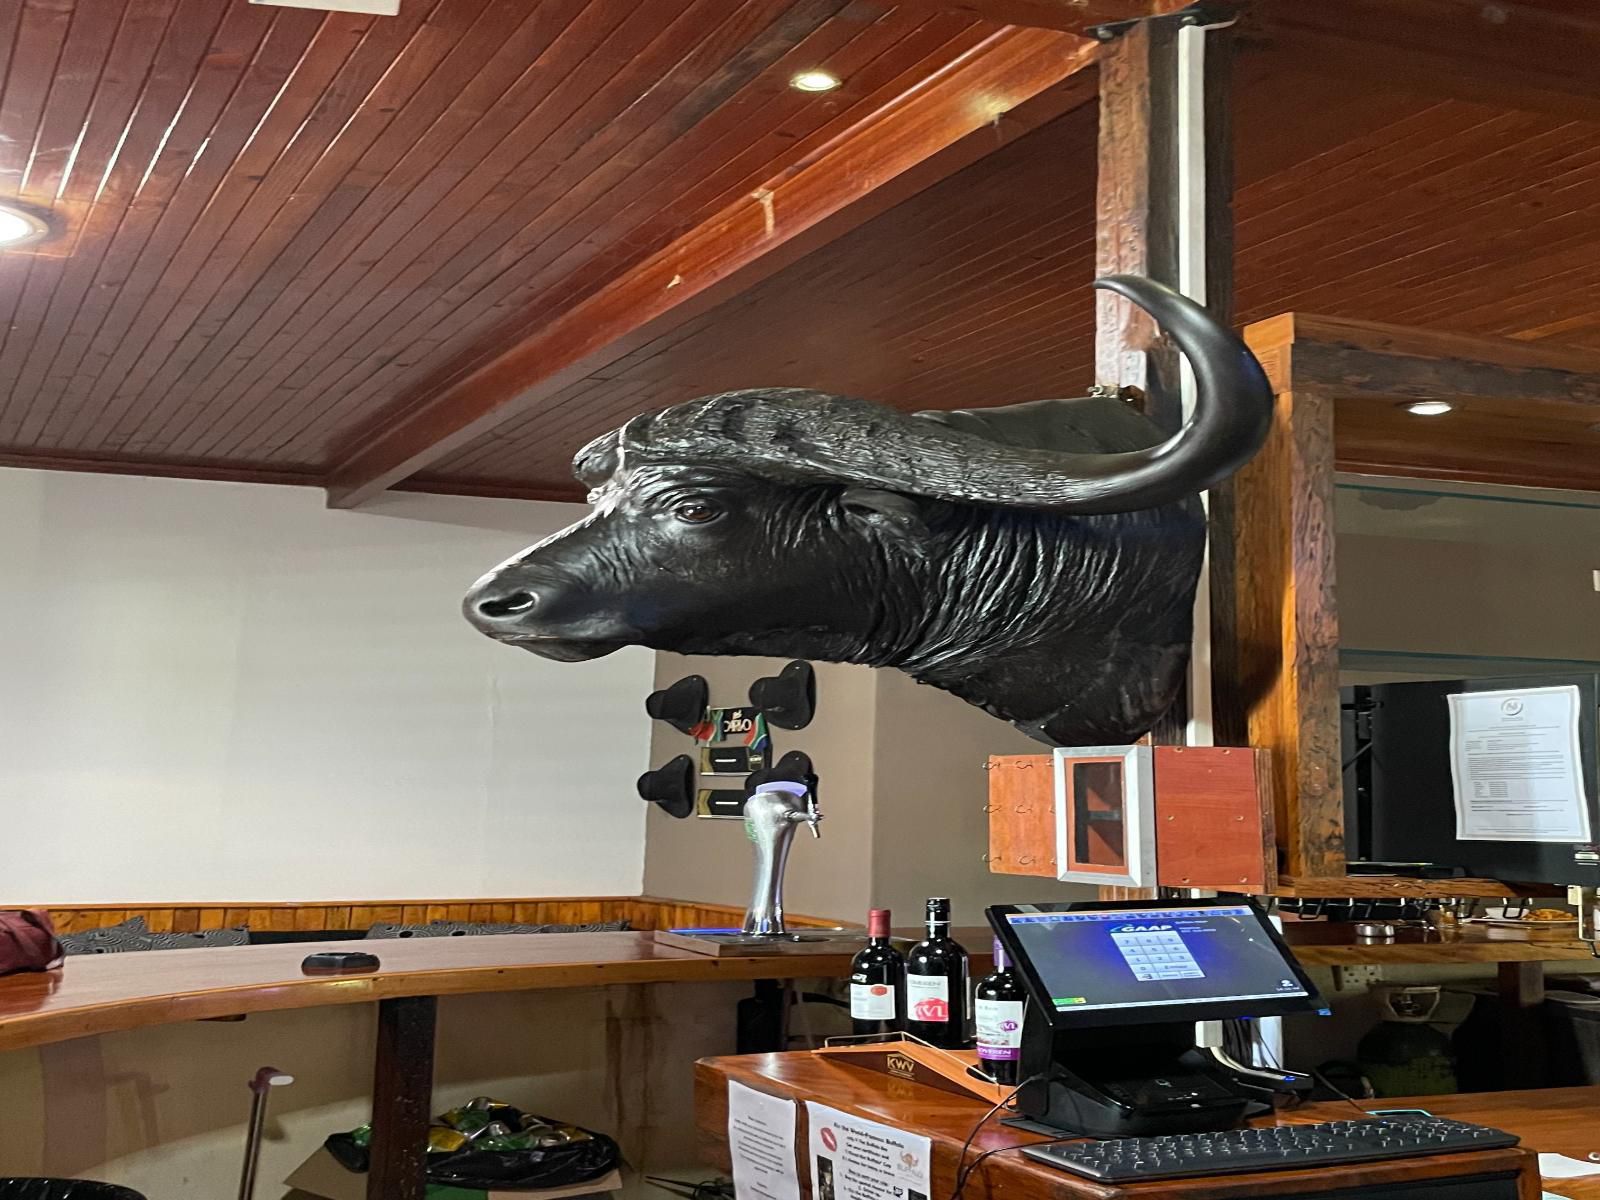 Buffalo Hotel Malelane Mpumalanga South Africa Statue, Architecture, Art, Animal, Bar